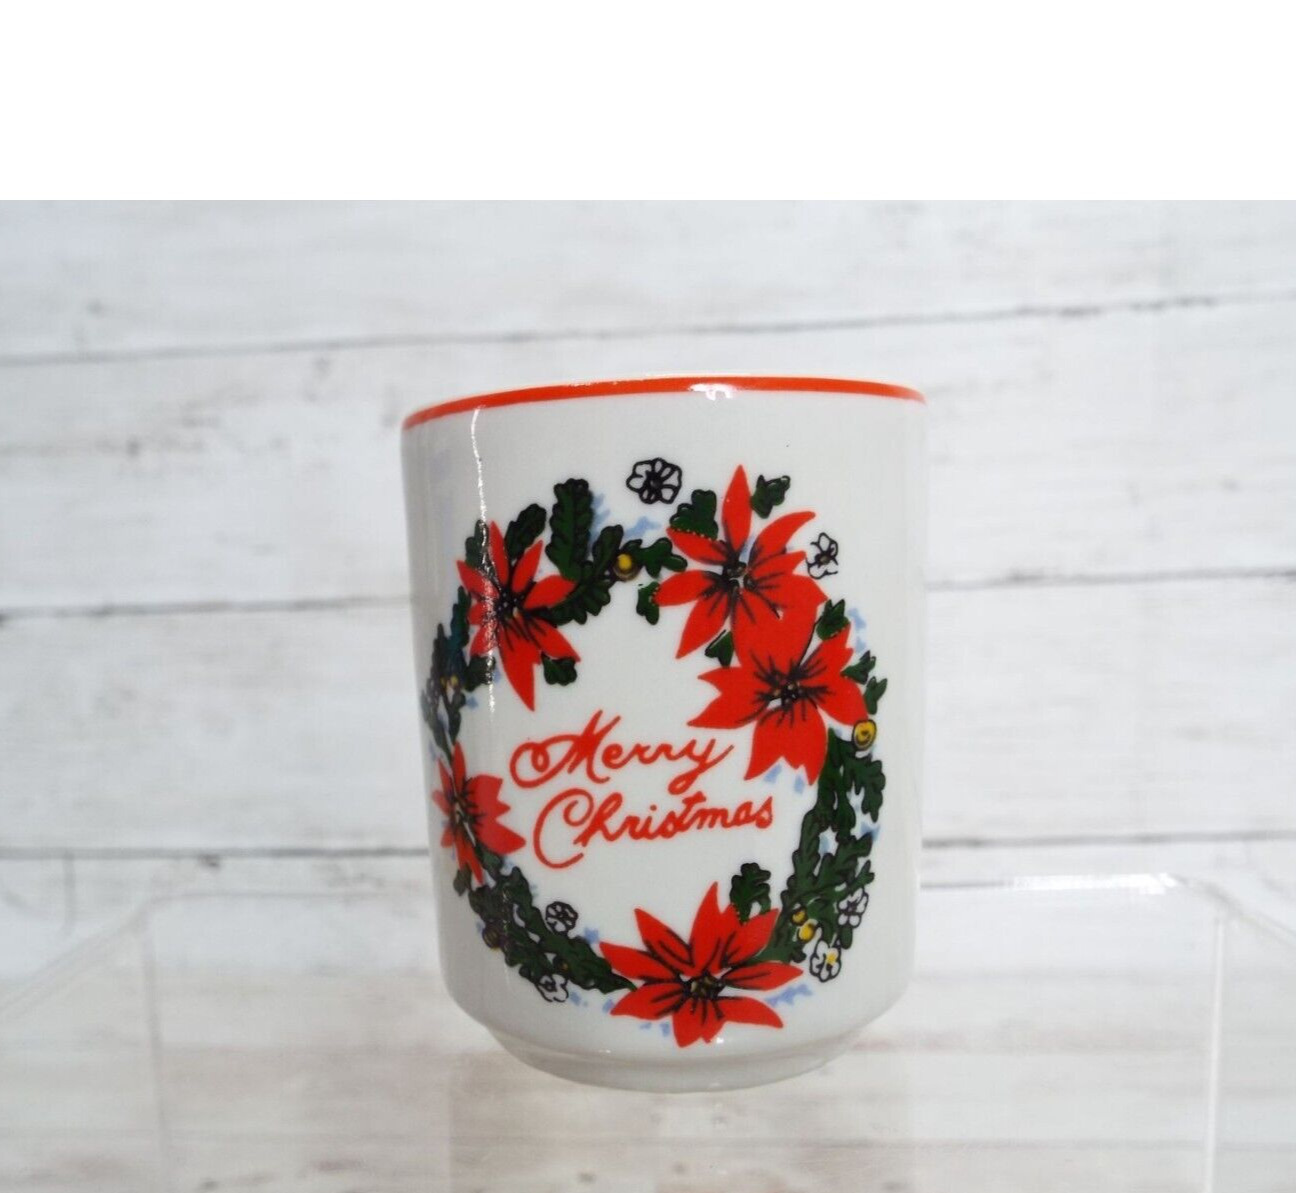 Vintage Porcelain Merry Christmas Poinsettia Votive Holder Made in Brazil